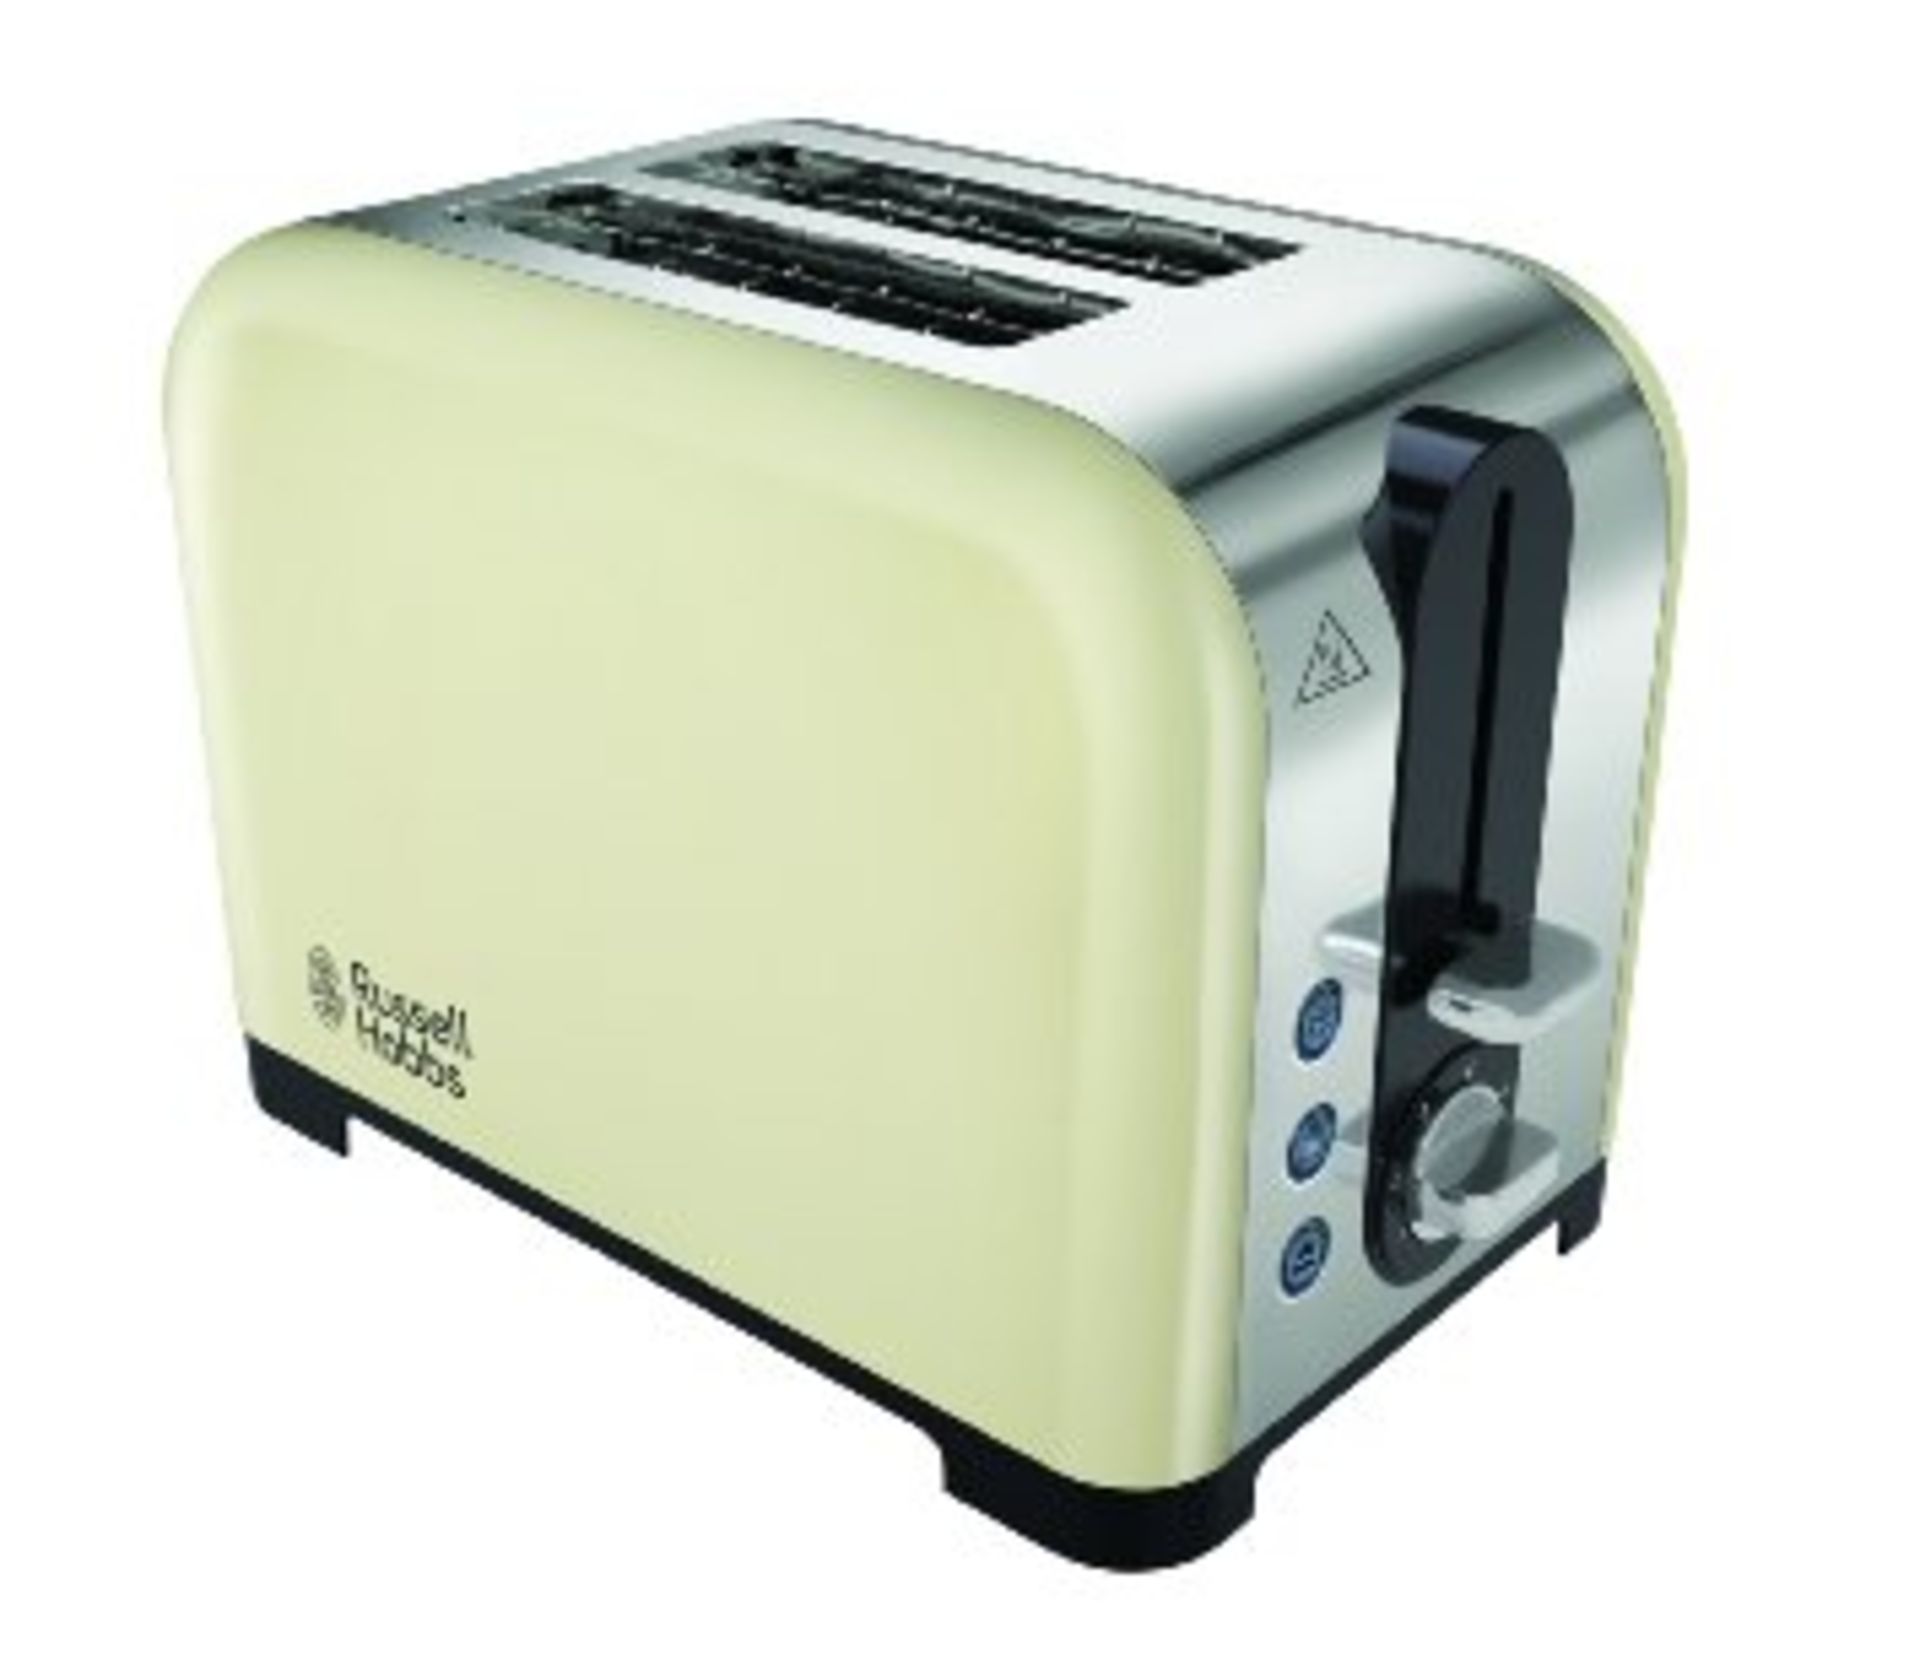 1 x Russell Hobbs Toasters (Sku: 22393)